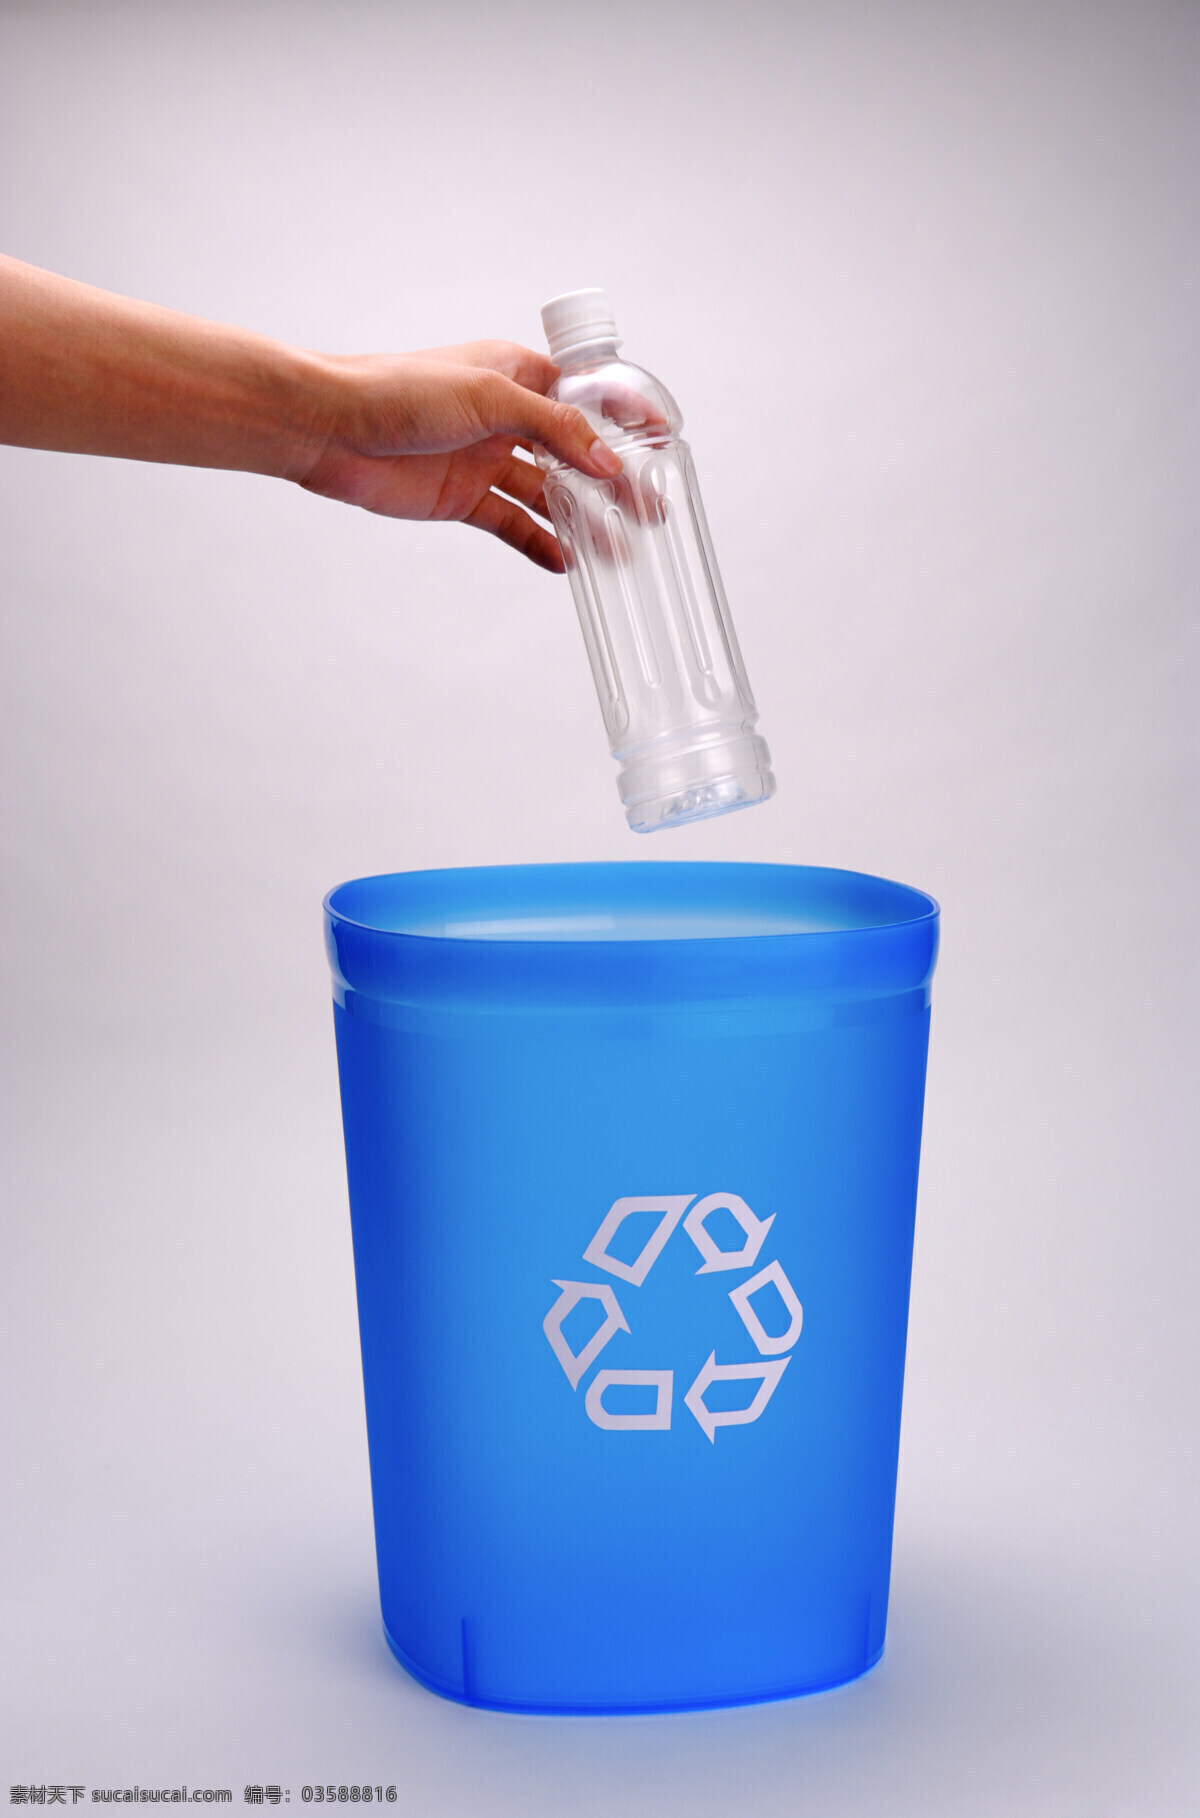 瓶子 回收 利用 垃圾桶 塑料瓶 垃圾 环保 公益广告 回收利用 可利用资源 高清图片 其他类别 生活百科